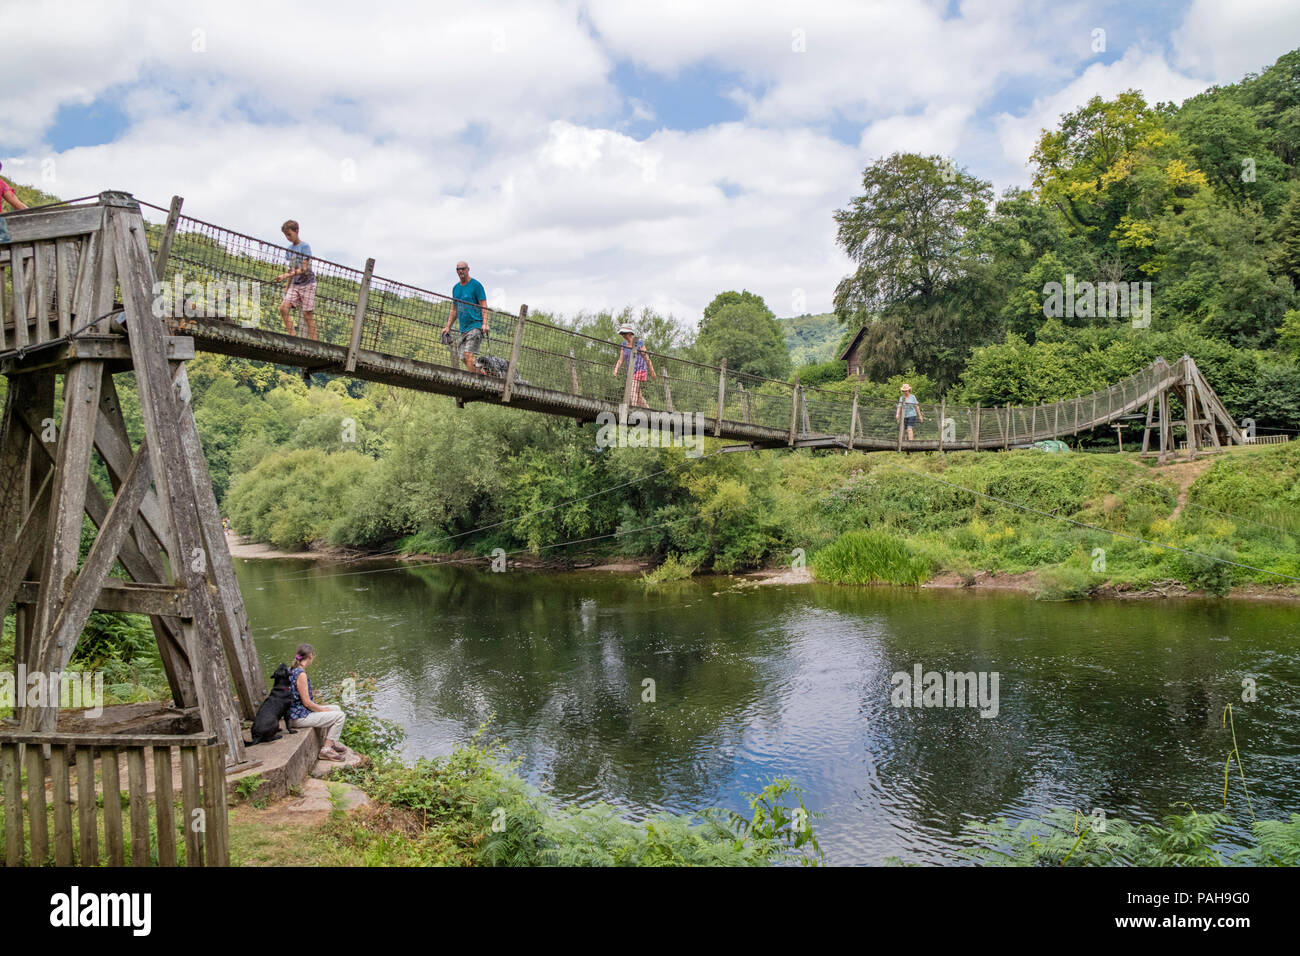 Biblins ponte di sospensione cercando di fronte a Symonds Yat ad est oltre il fiume Wye, Wye Valley, Herefordshire, England, Regno Unito Foto Stock